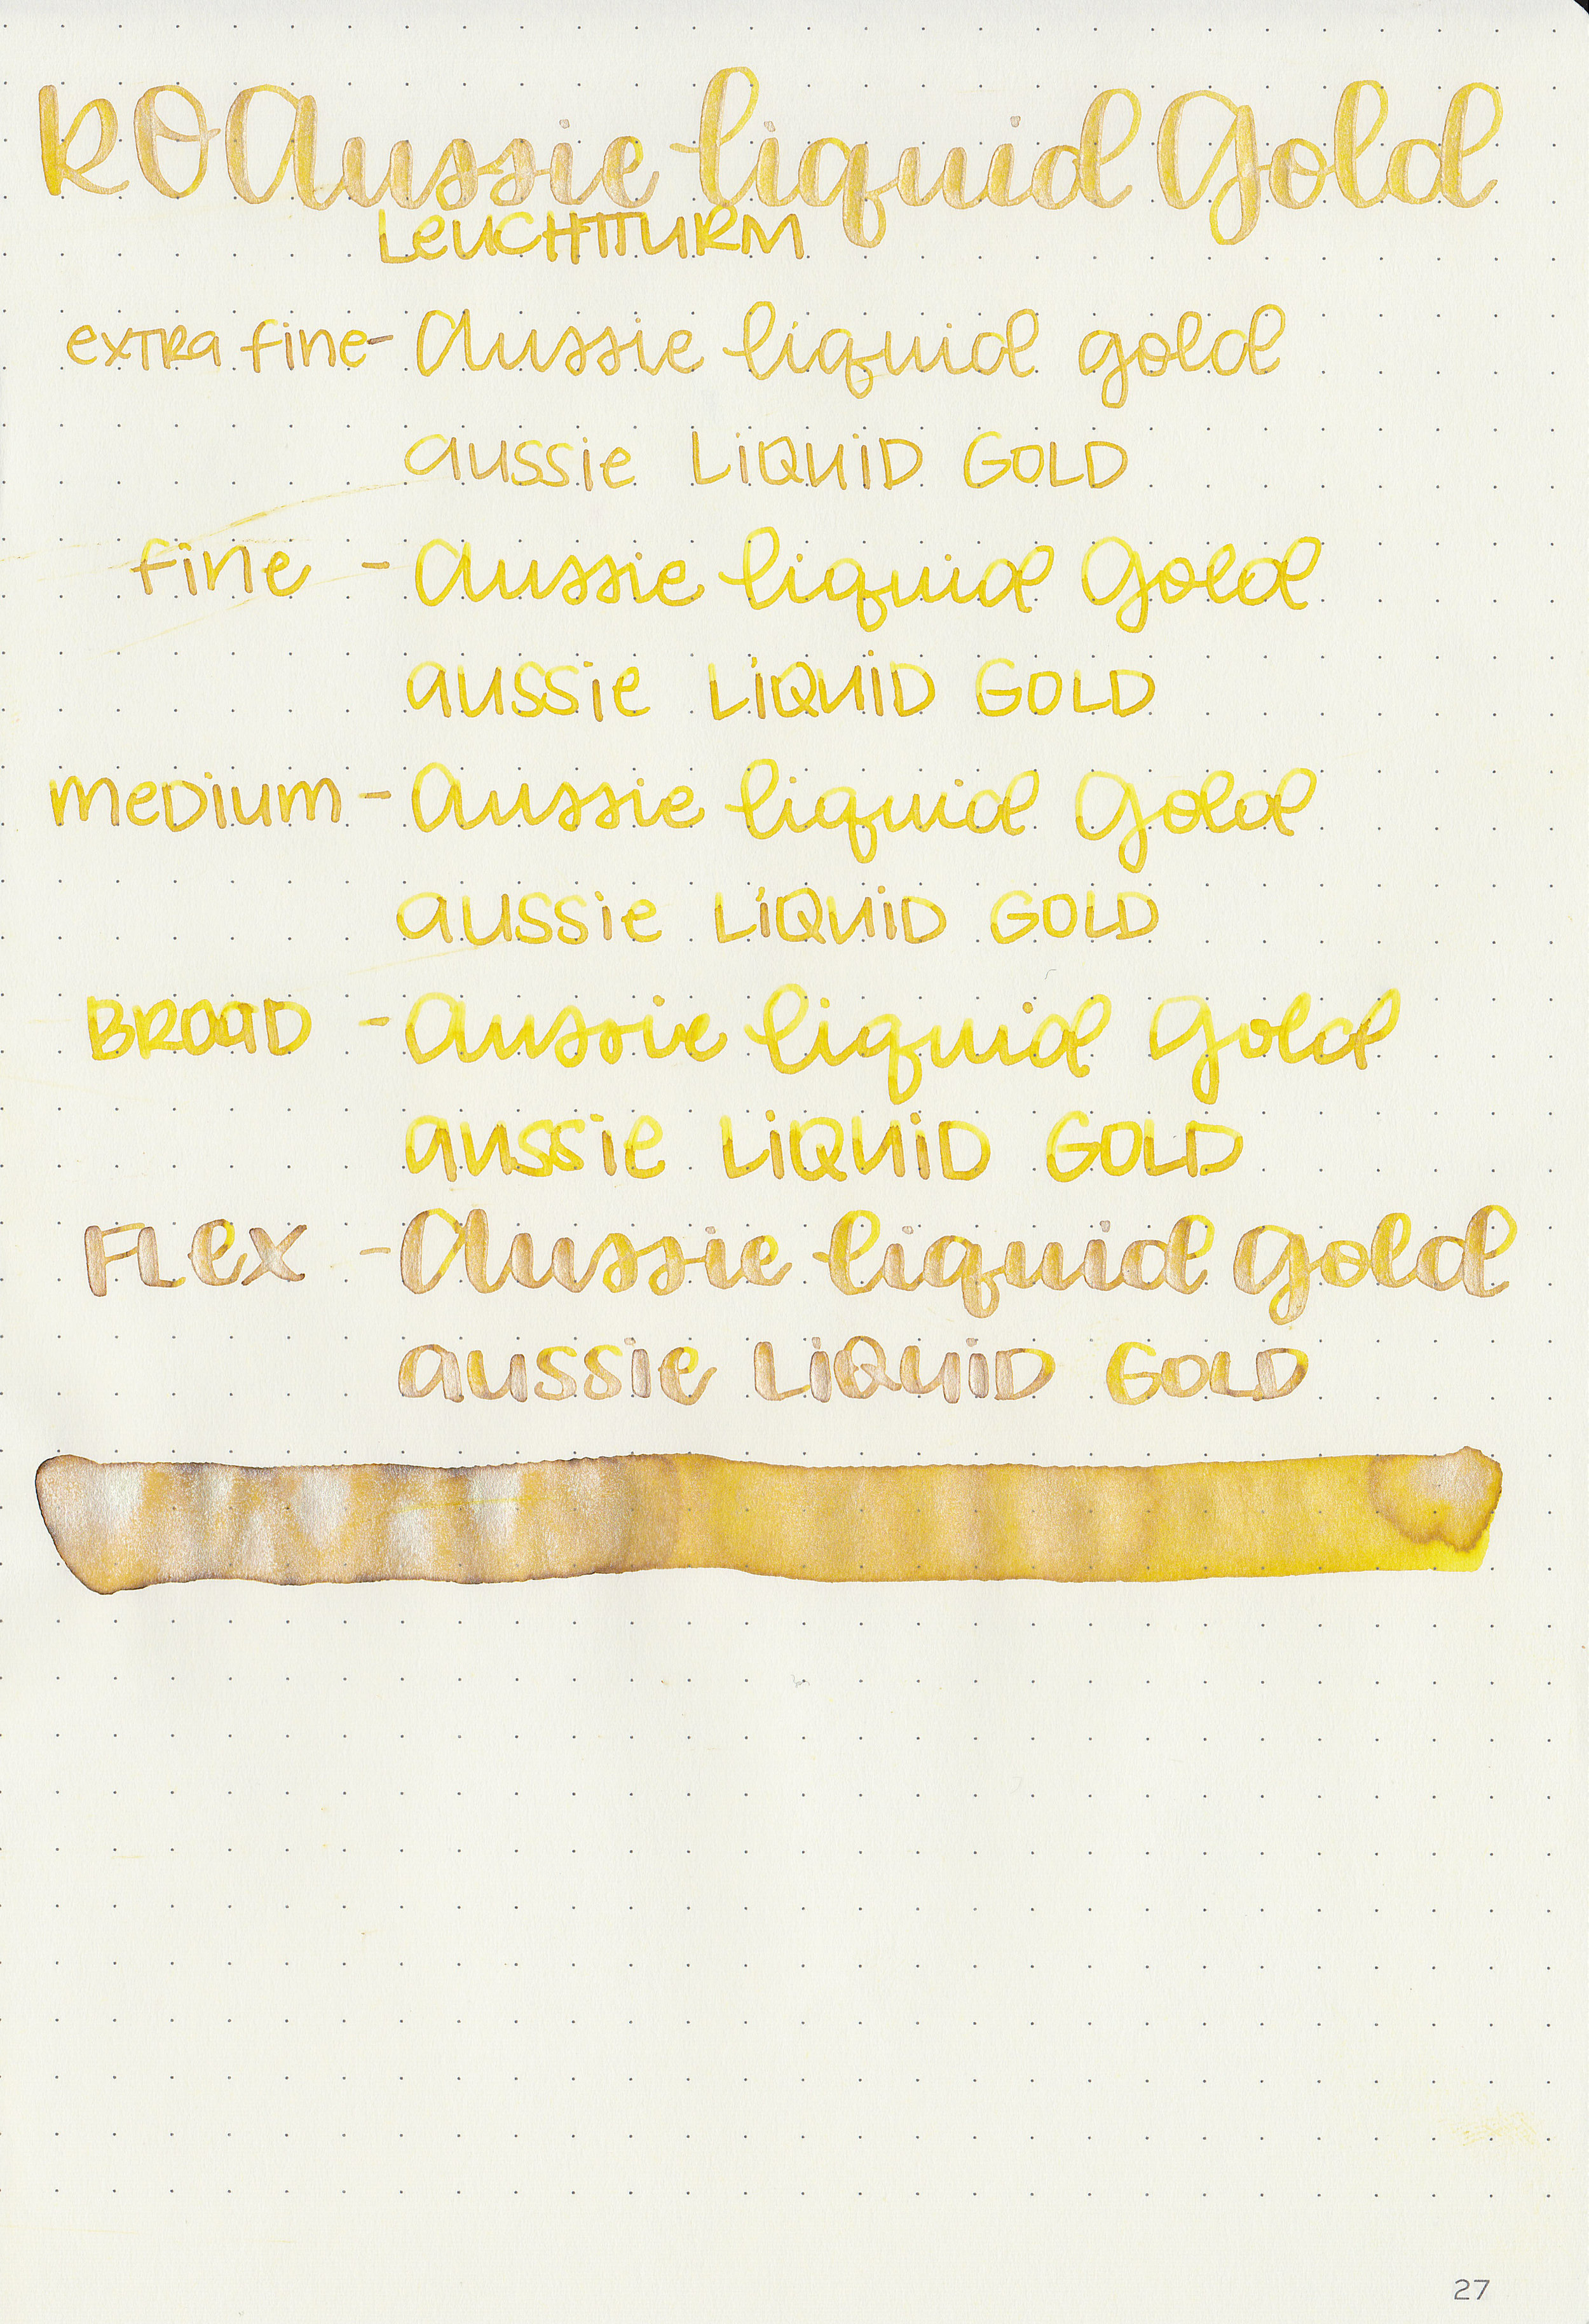 ro-aussie-liquid-gold-10.jpg